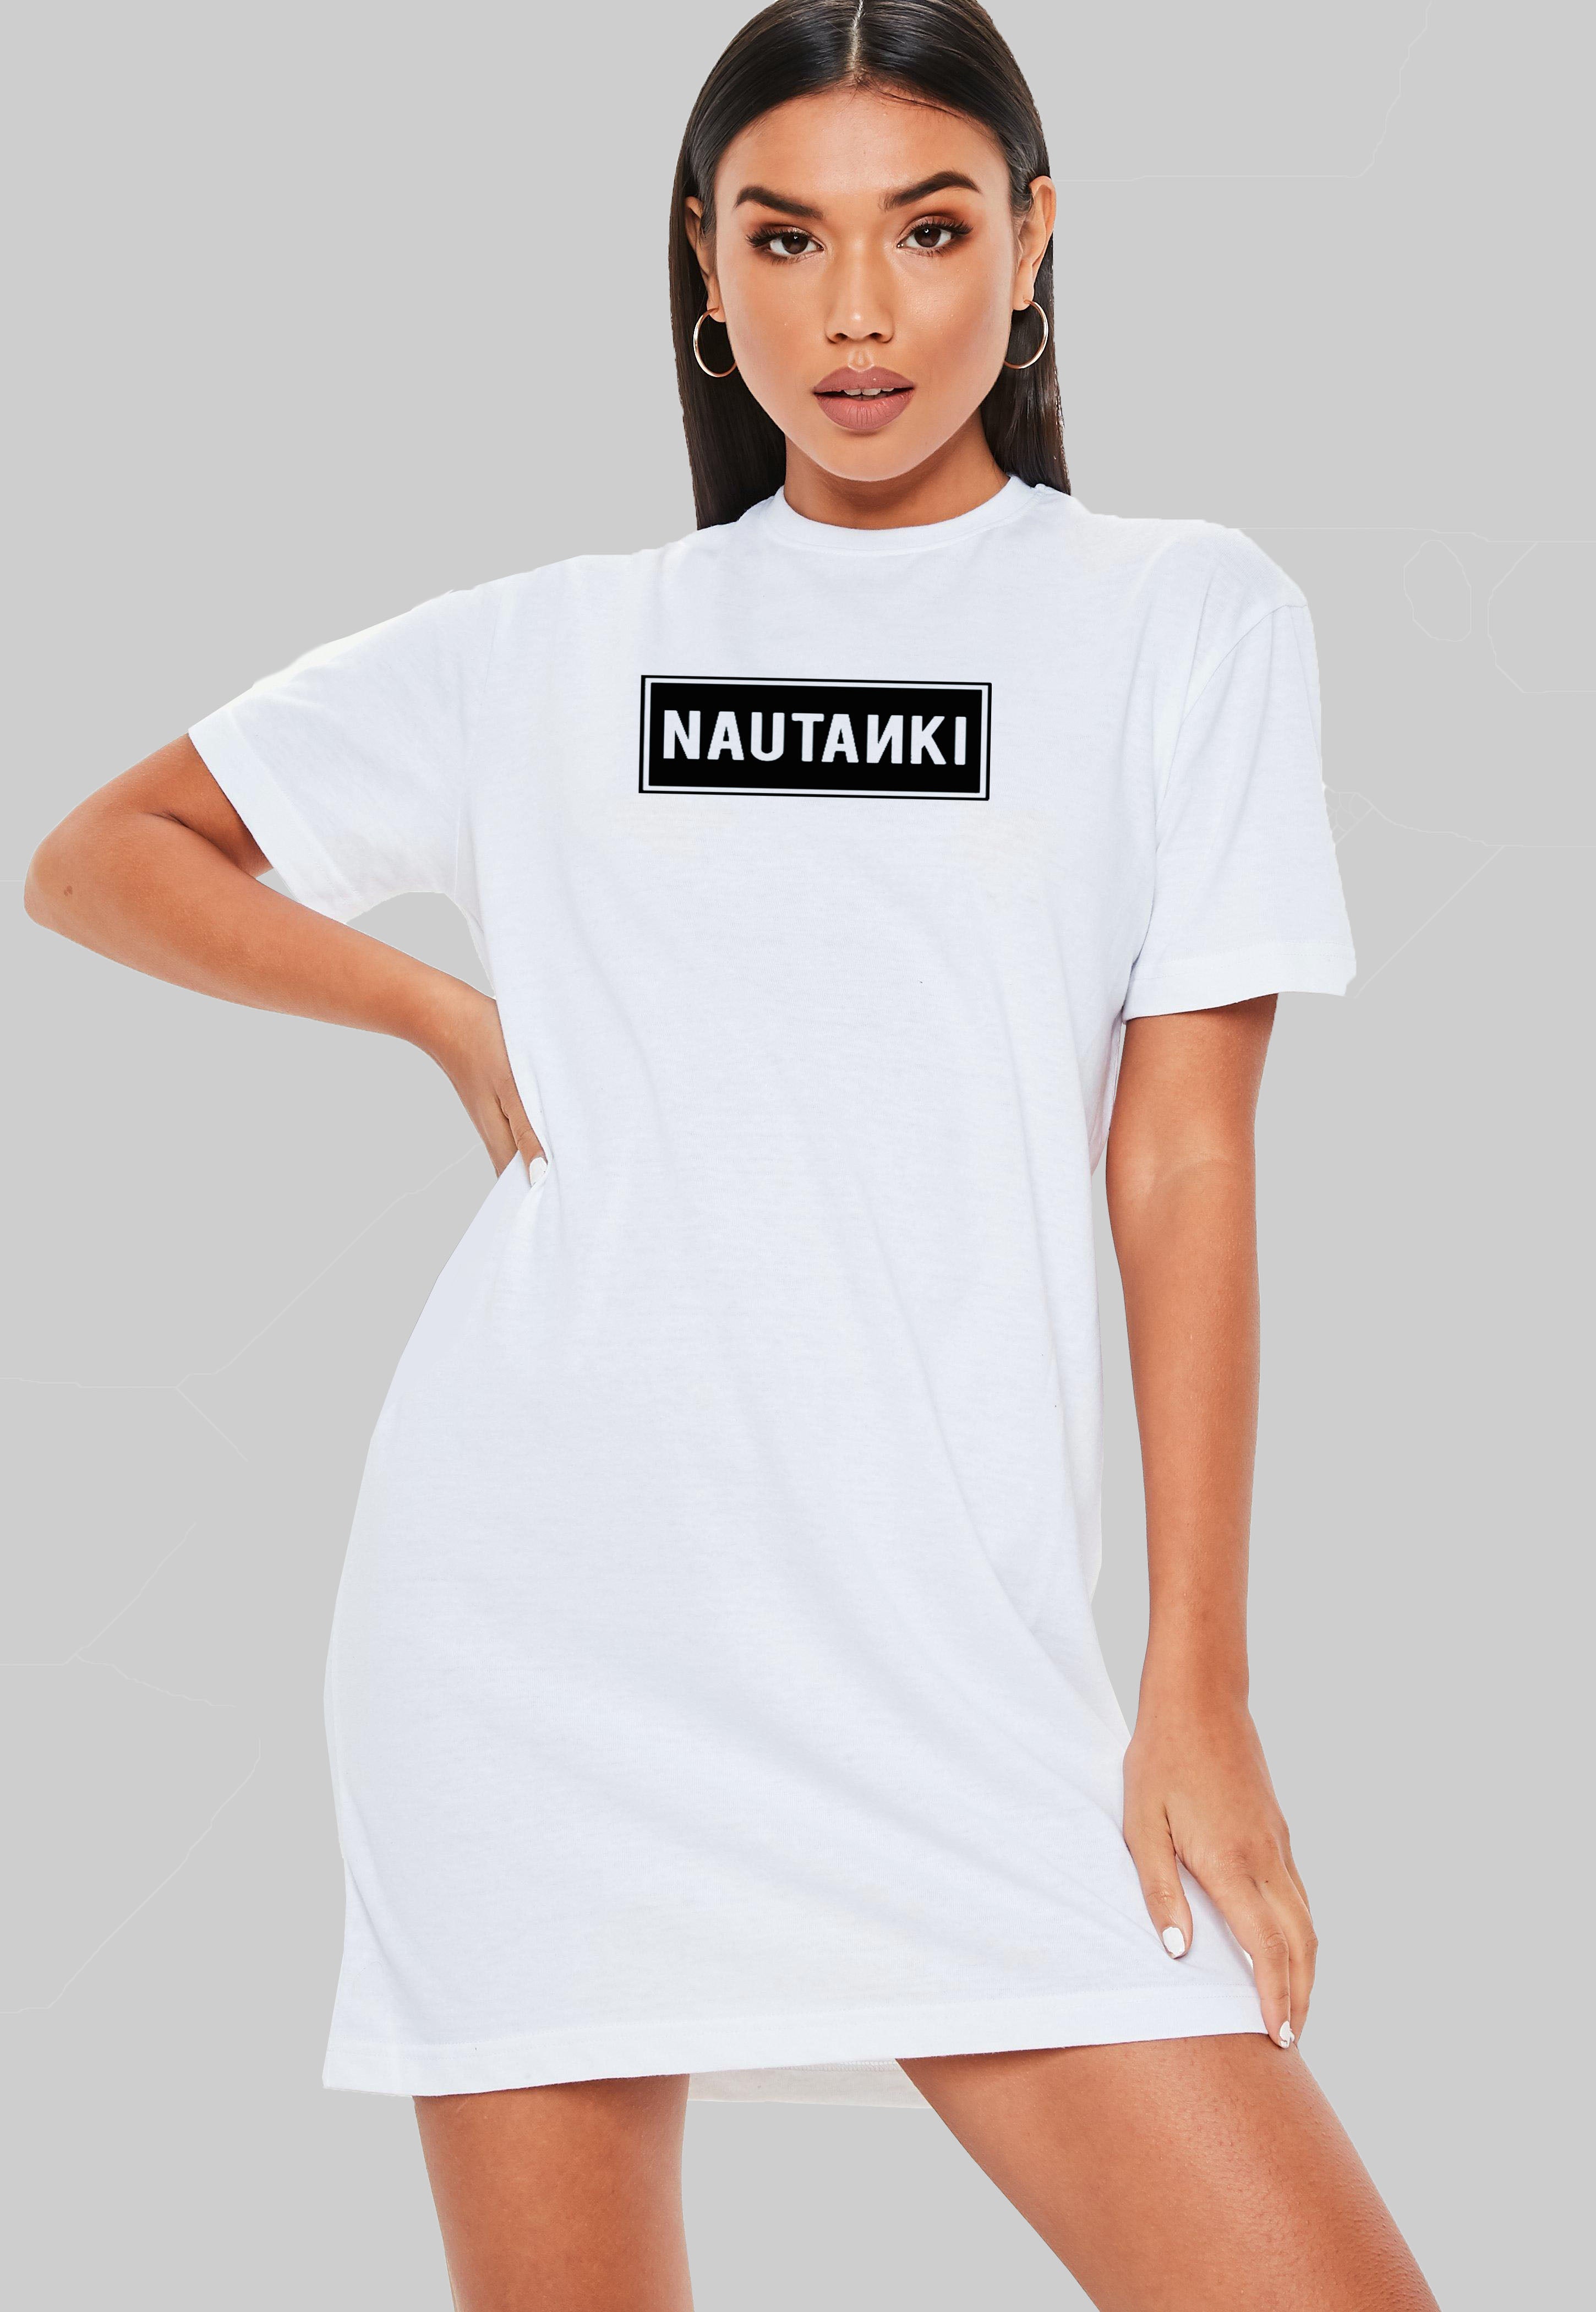 Nautanki T-Shirt Dress